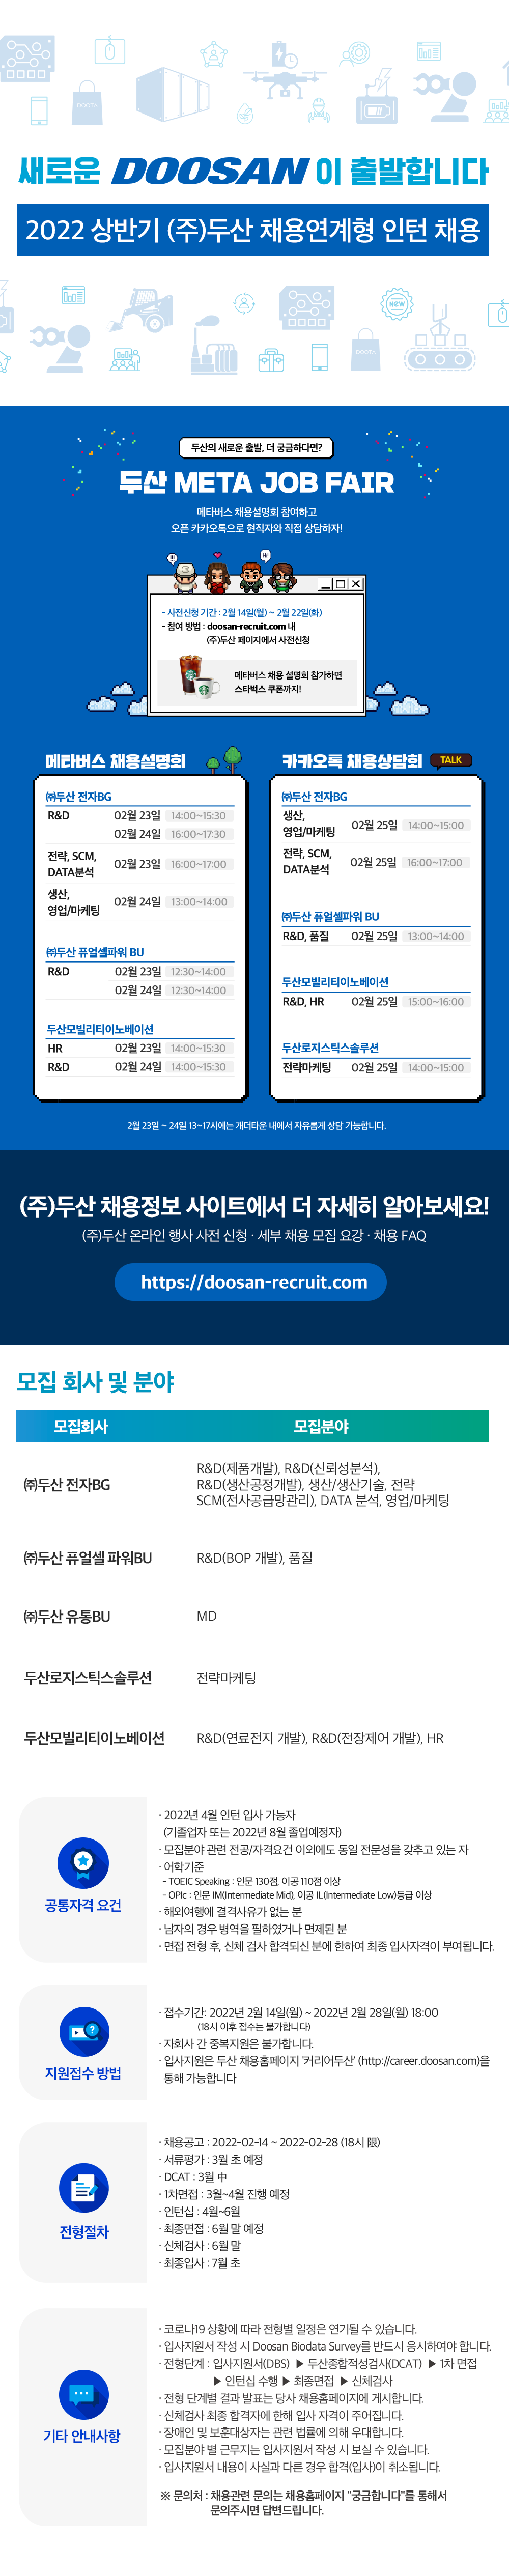 [(주)두산] 2022년 상반기 채용연계형 인턴 채용 (~2월 28일까지)